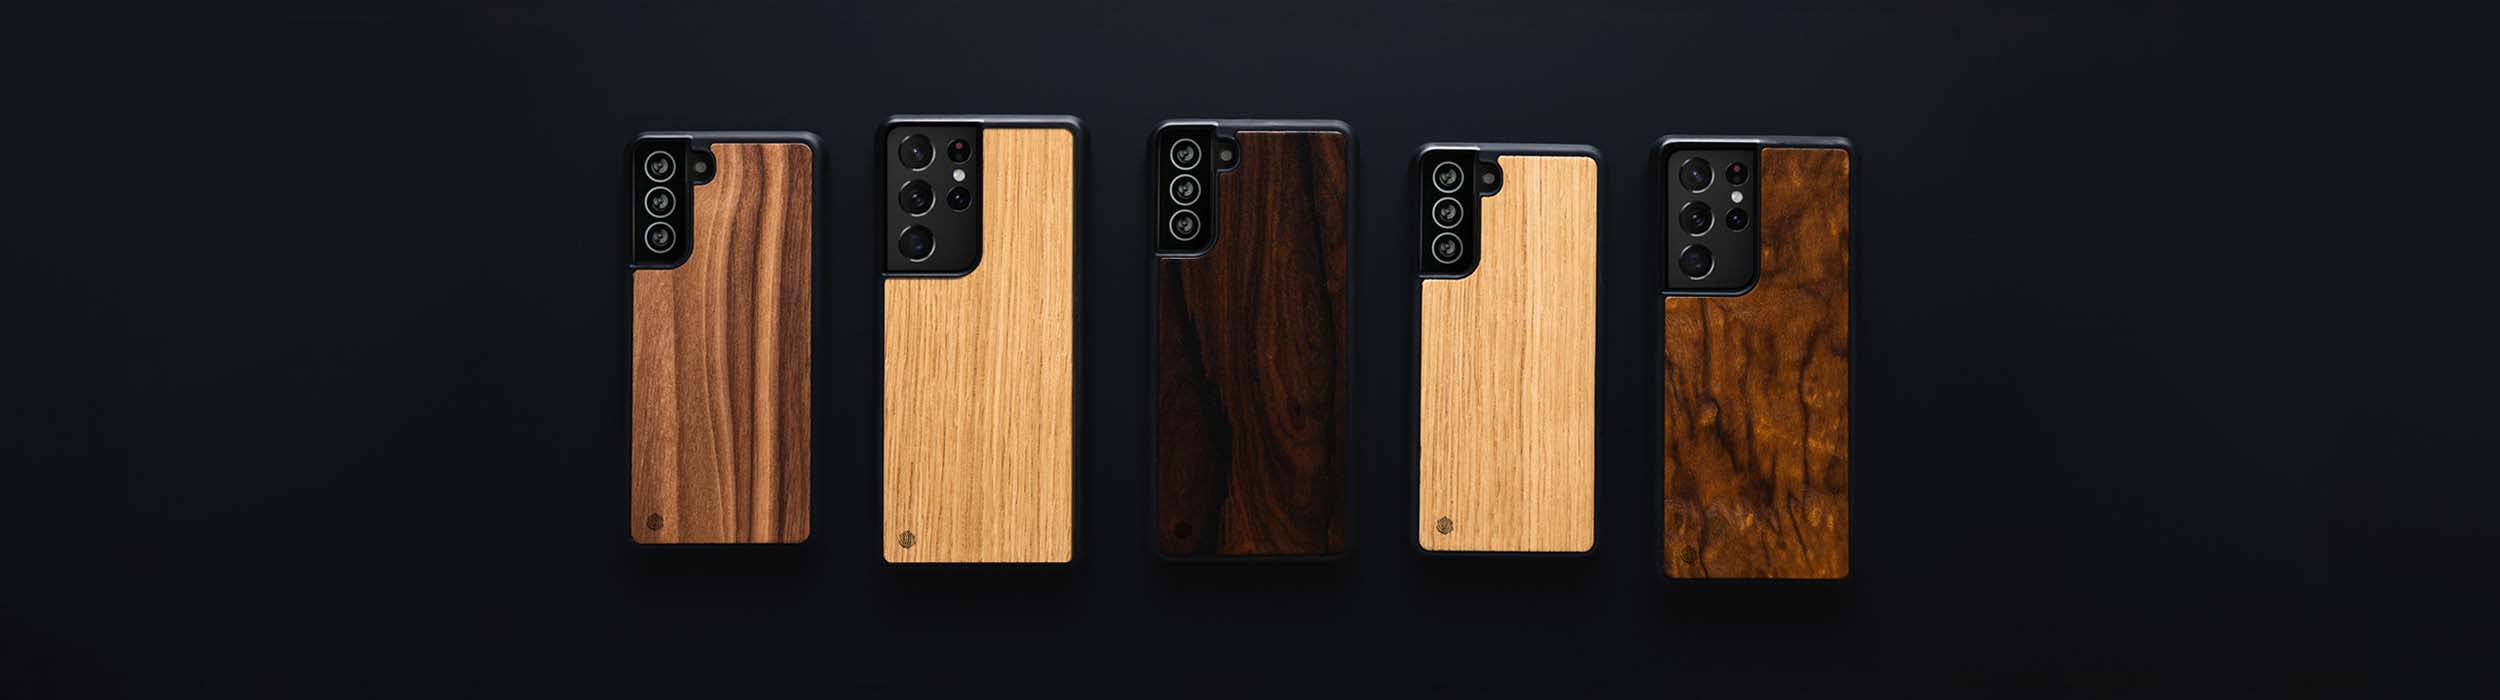 Samsung Galaxy S21 Ultra Handyhüllen aus Holz